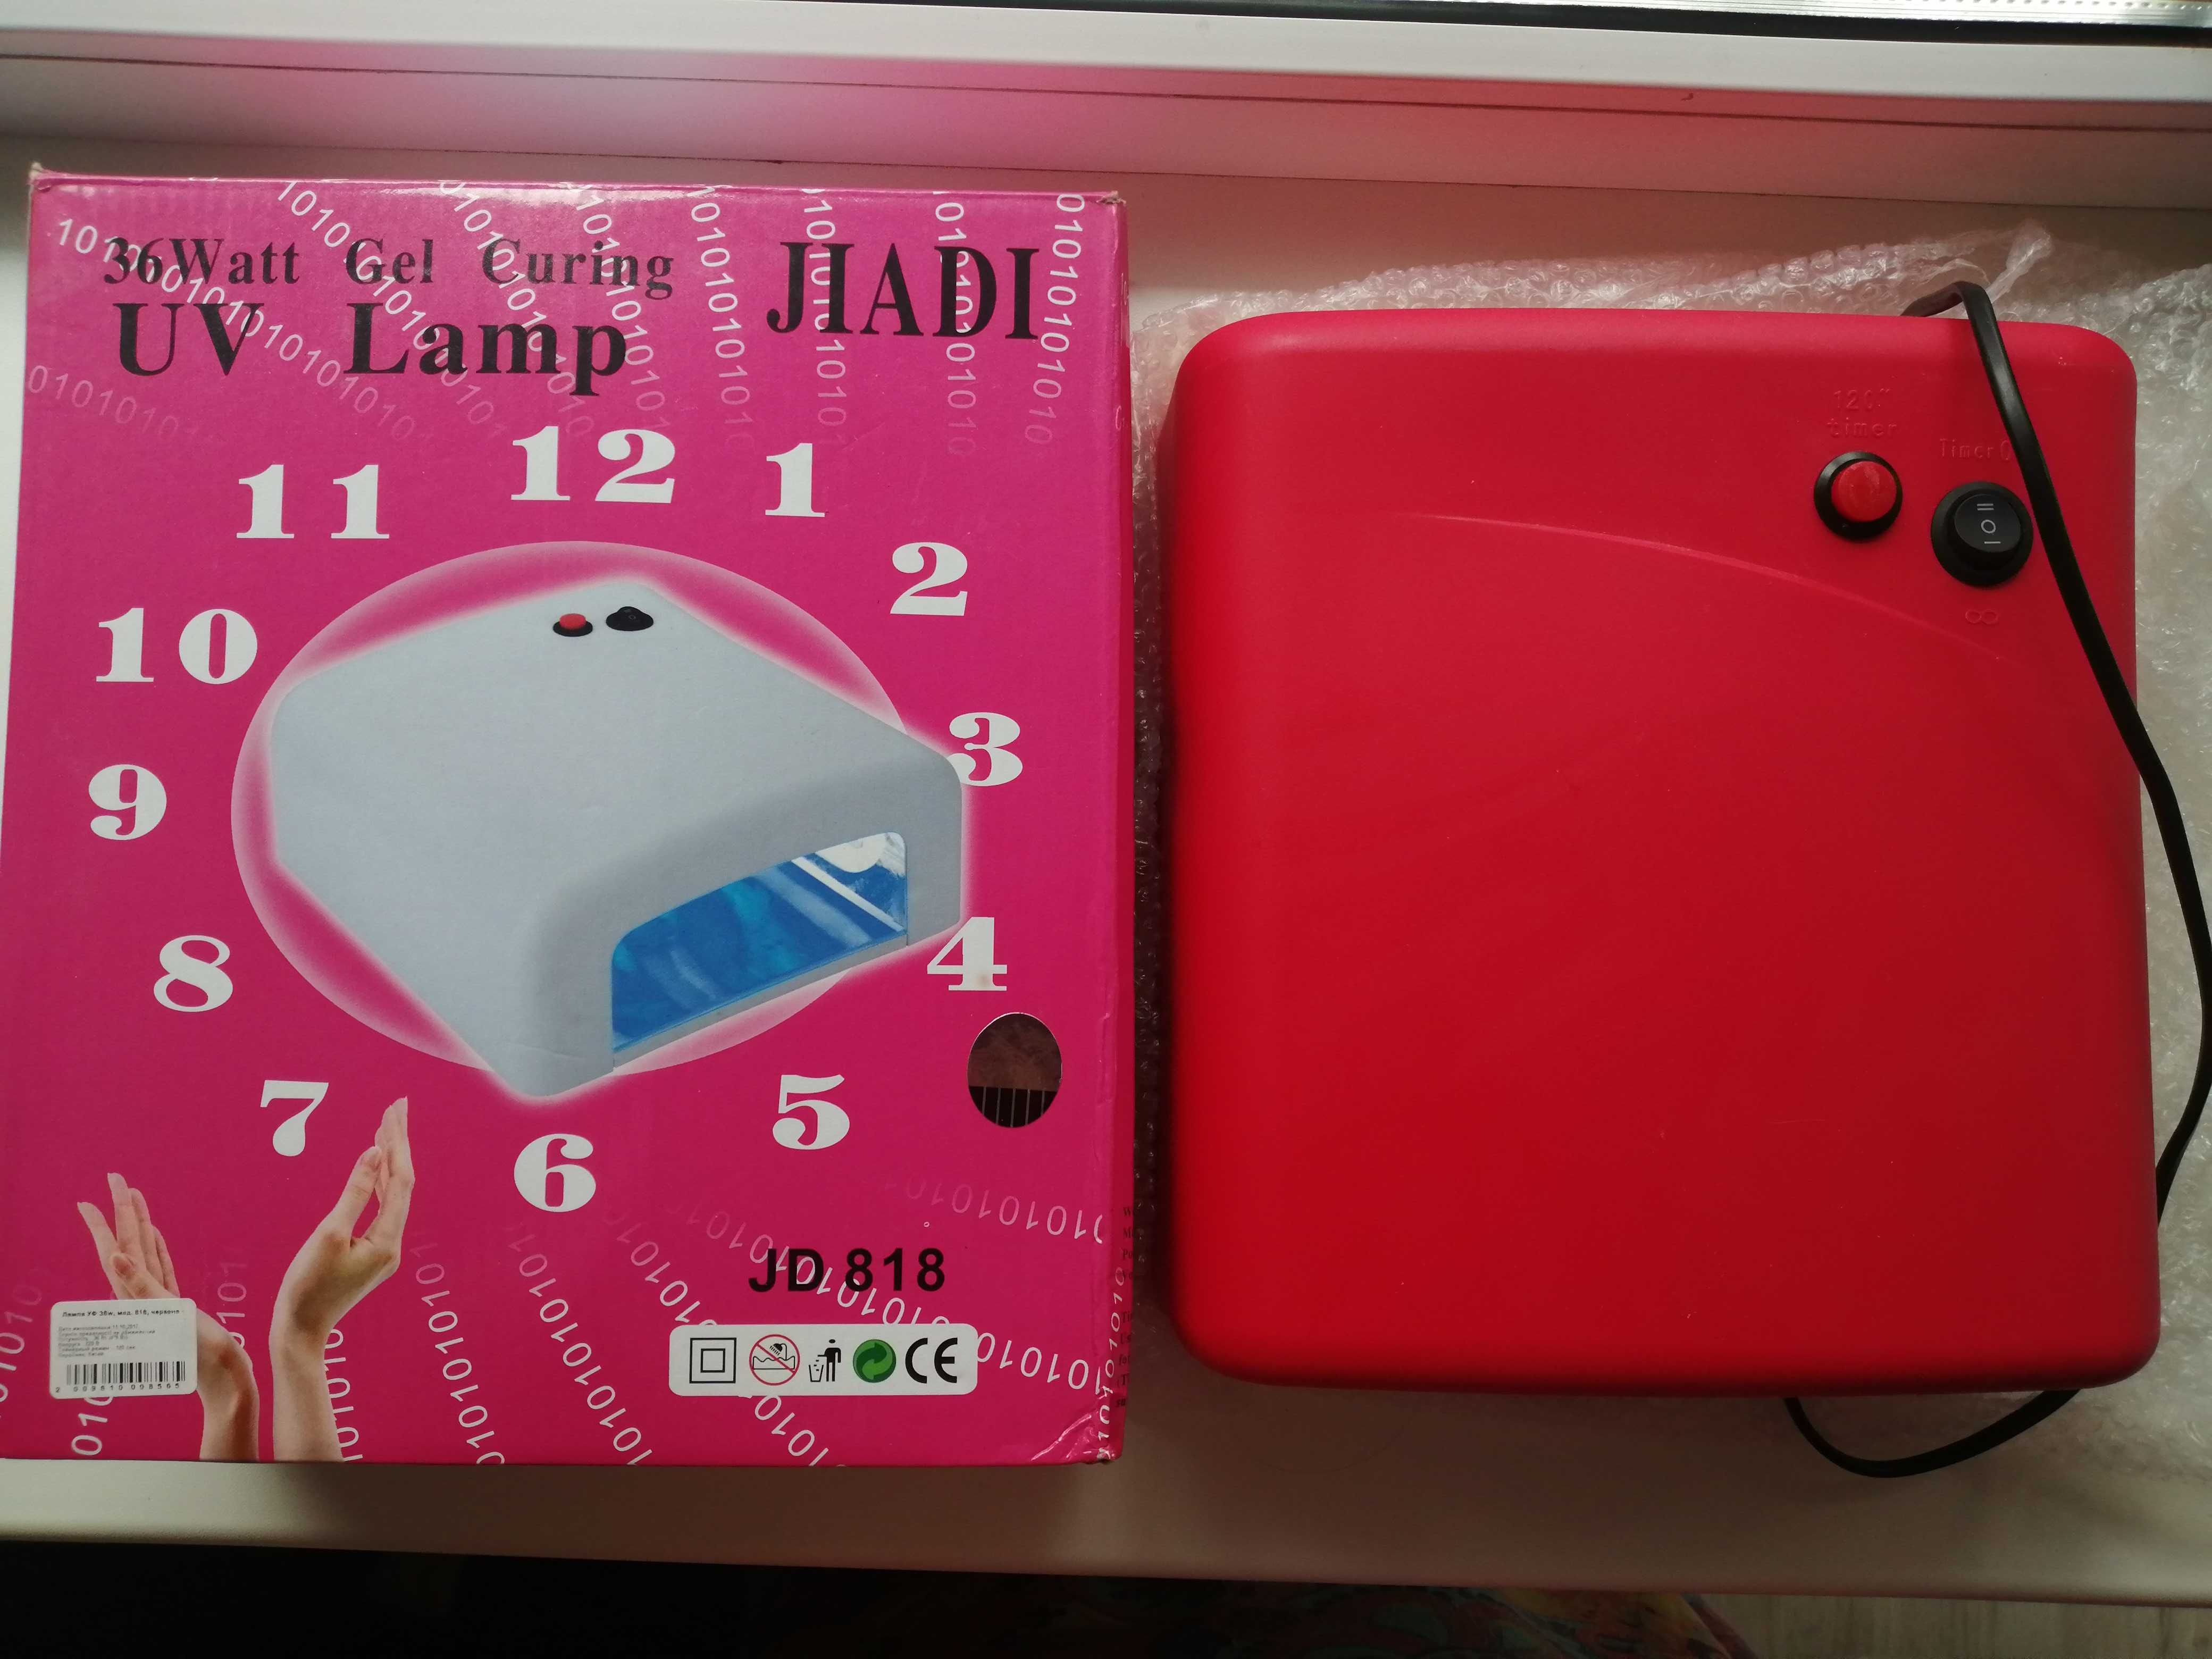 Лампа JIADI JD 818 36W для сушки гель-лака